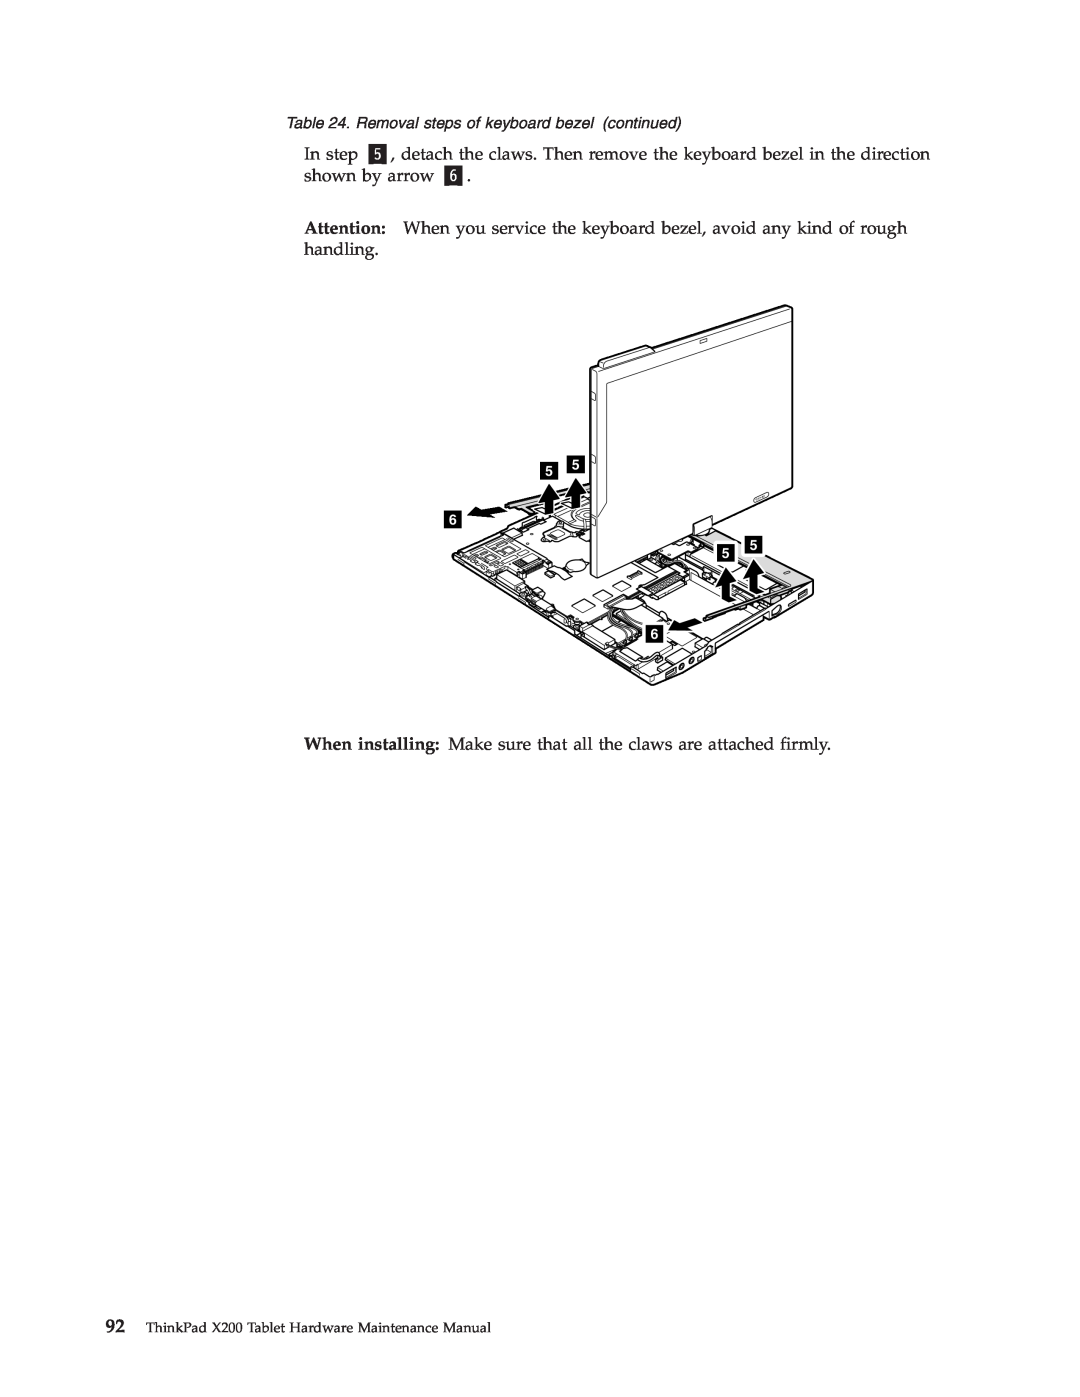 Lenovo X200 manual In step 